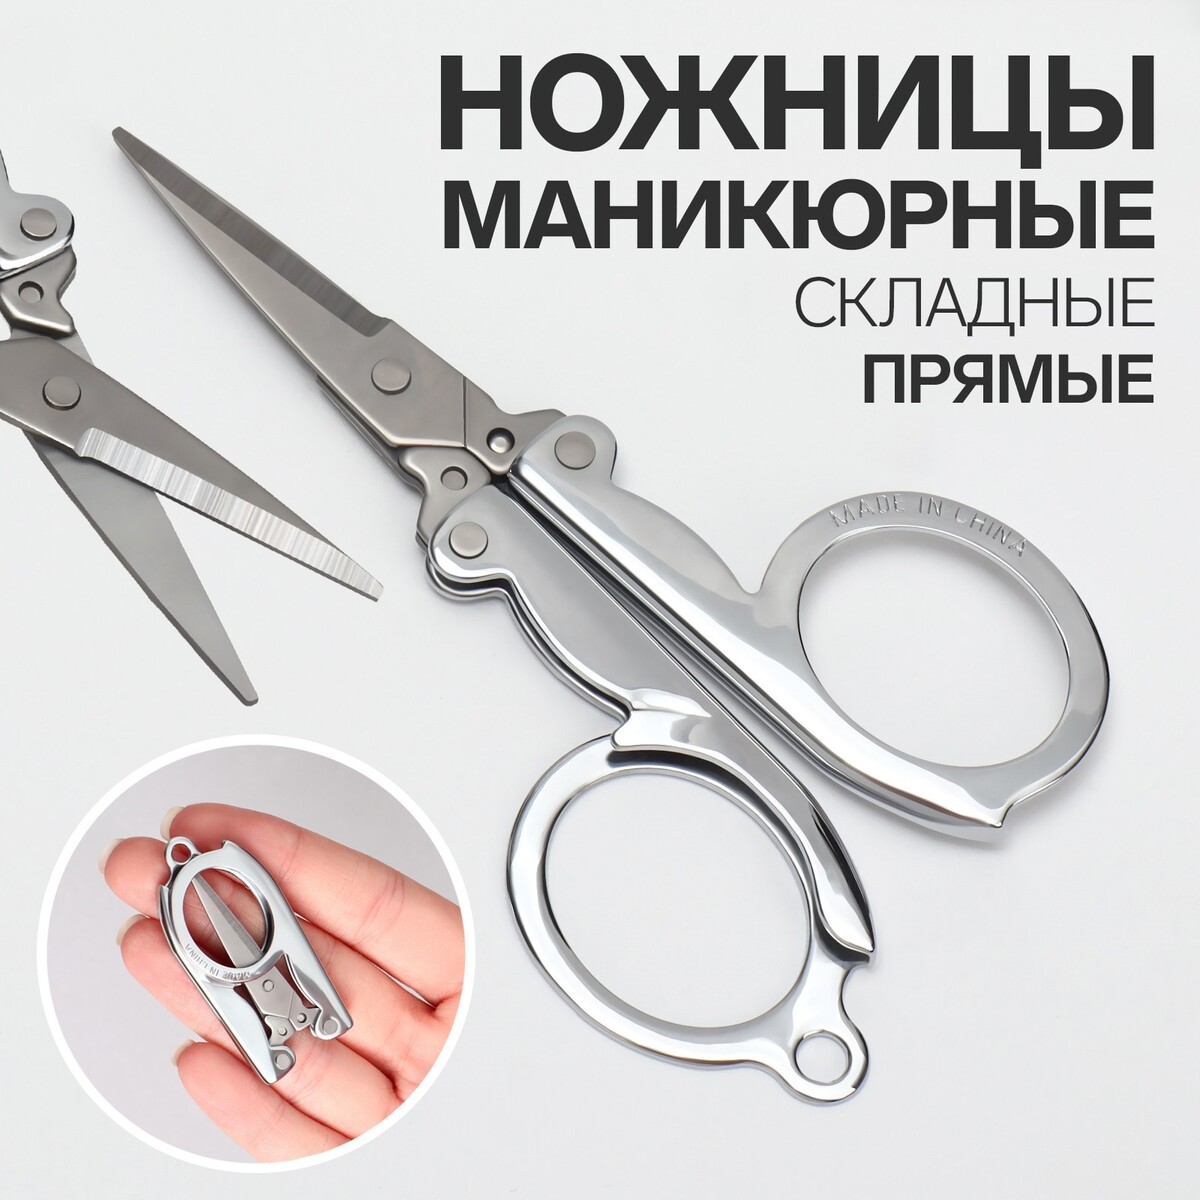 Ножницы маникюрные, прямые, складные, 9 см, цвет серебристый ножницы маникюрные прямые узкие 9 см серебристый